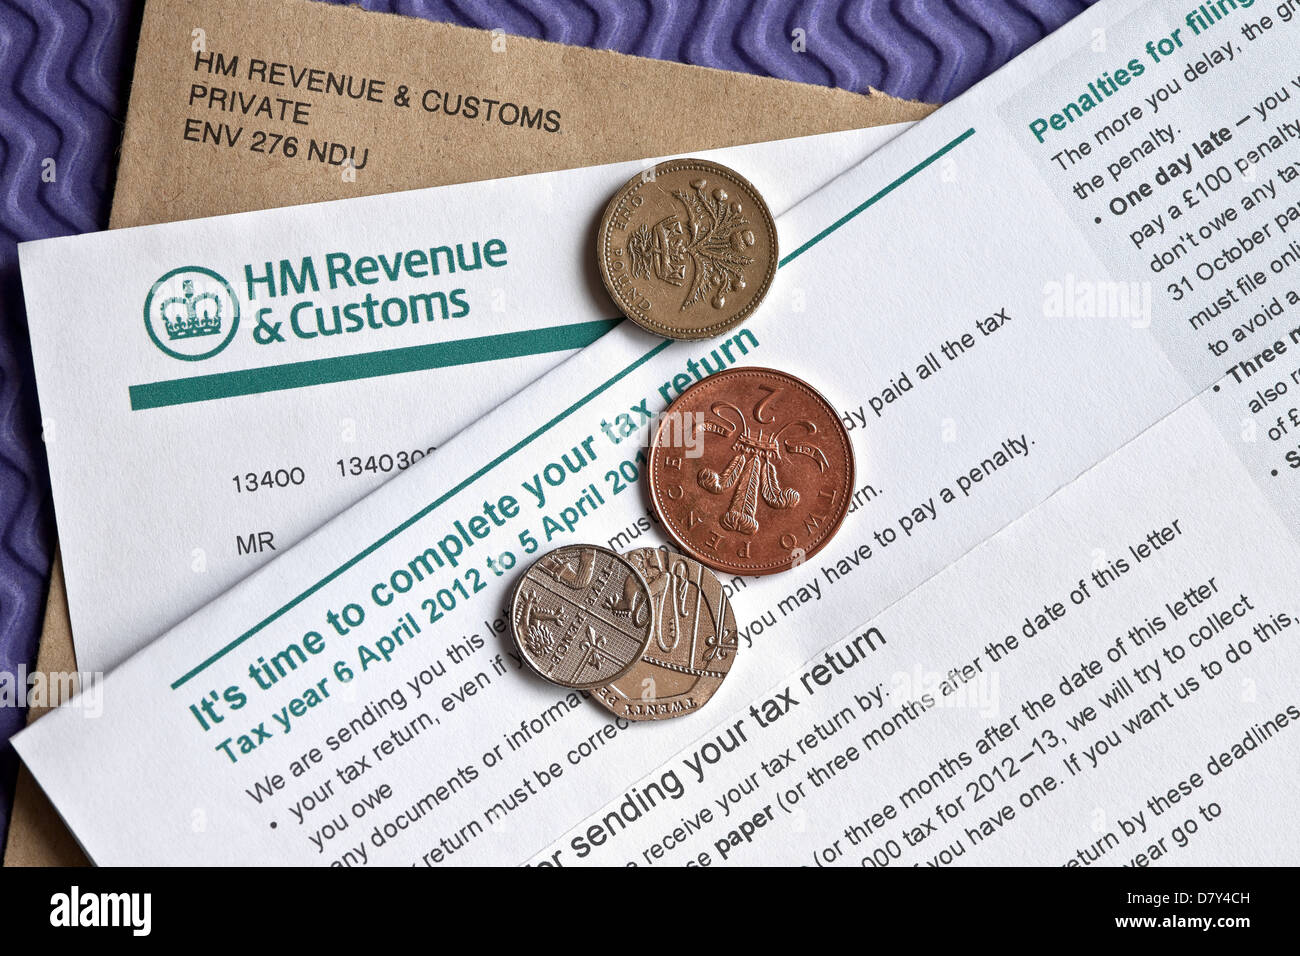 Gros plan de l'auto-évaluation des revenus et des douanes de HMRC HM Avis de remplir un formulaire de déclaration d'impôt Angleterre Royaume-Uni Royaume-Uni Grande-Bretagne Banque D'Images